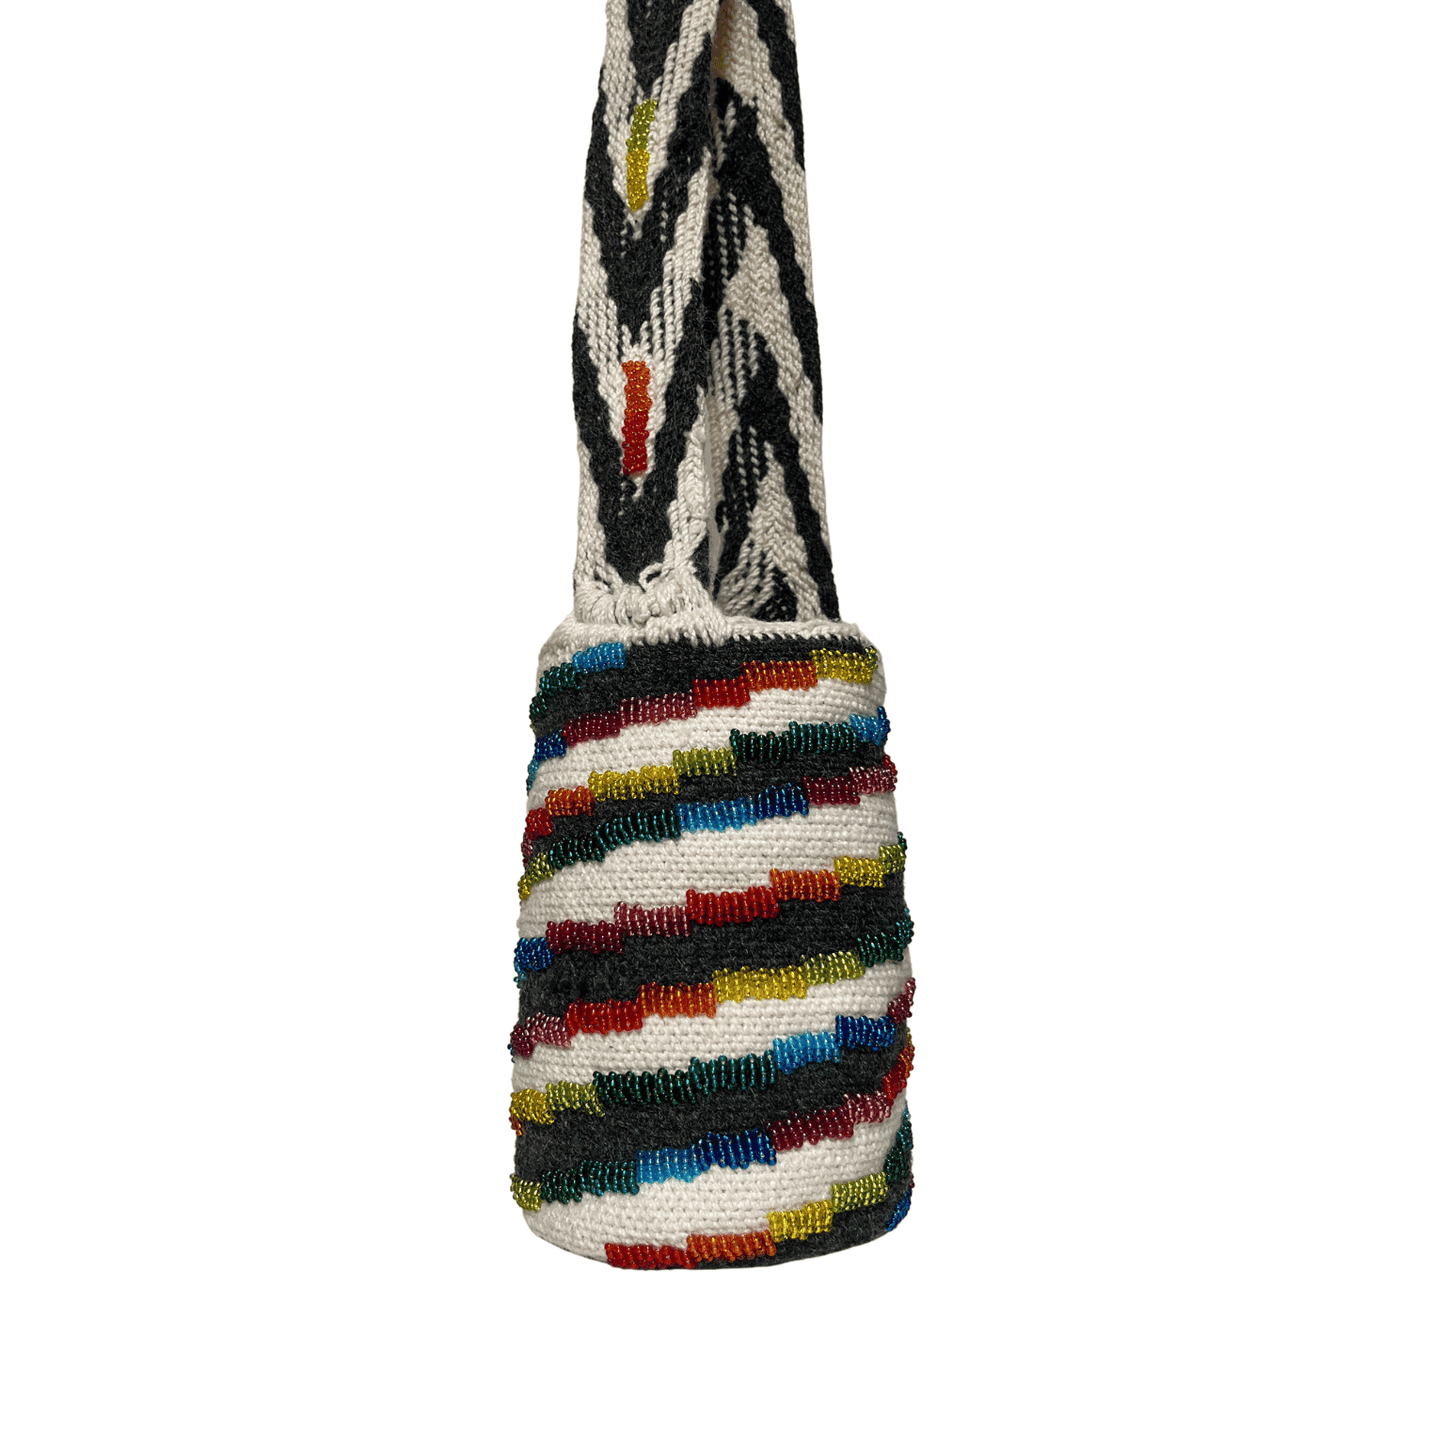 Mochila arhuaca para mujer diseño Caracol decorada con mostacillas de Colores